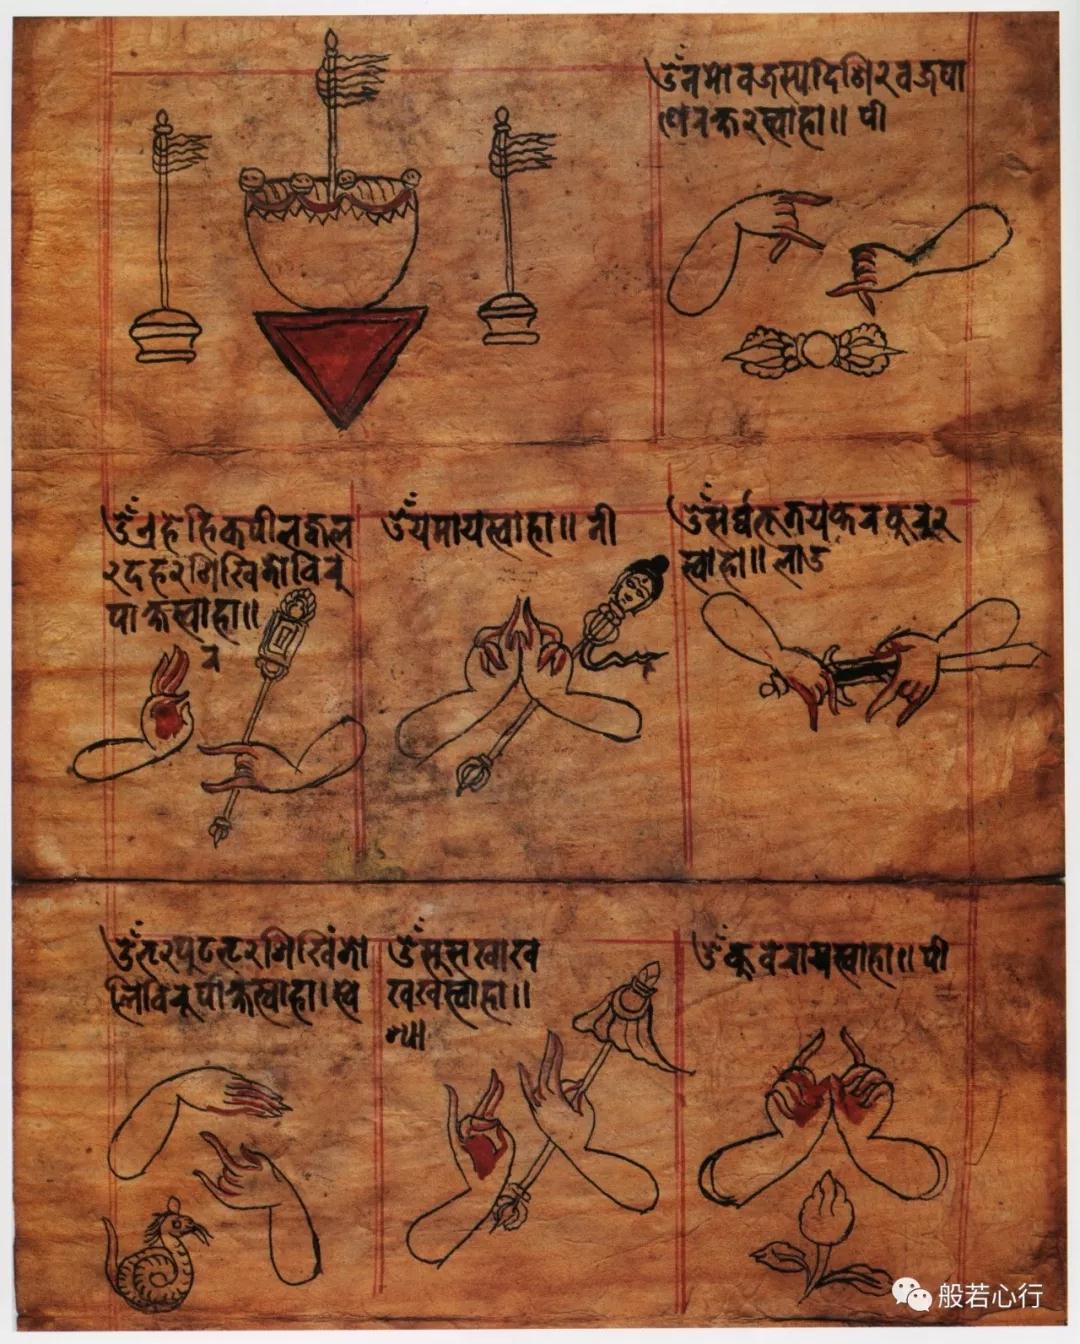 胜乐金刚/金刚亥母观想手印的仪轨手册 —《极乐之轮:佛教冥想艺术》